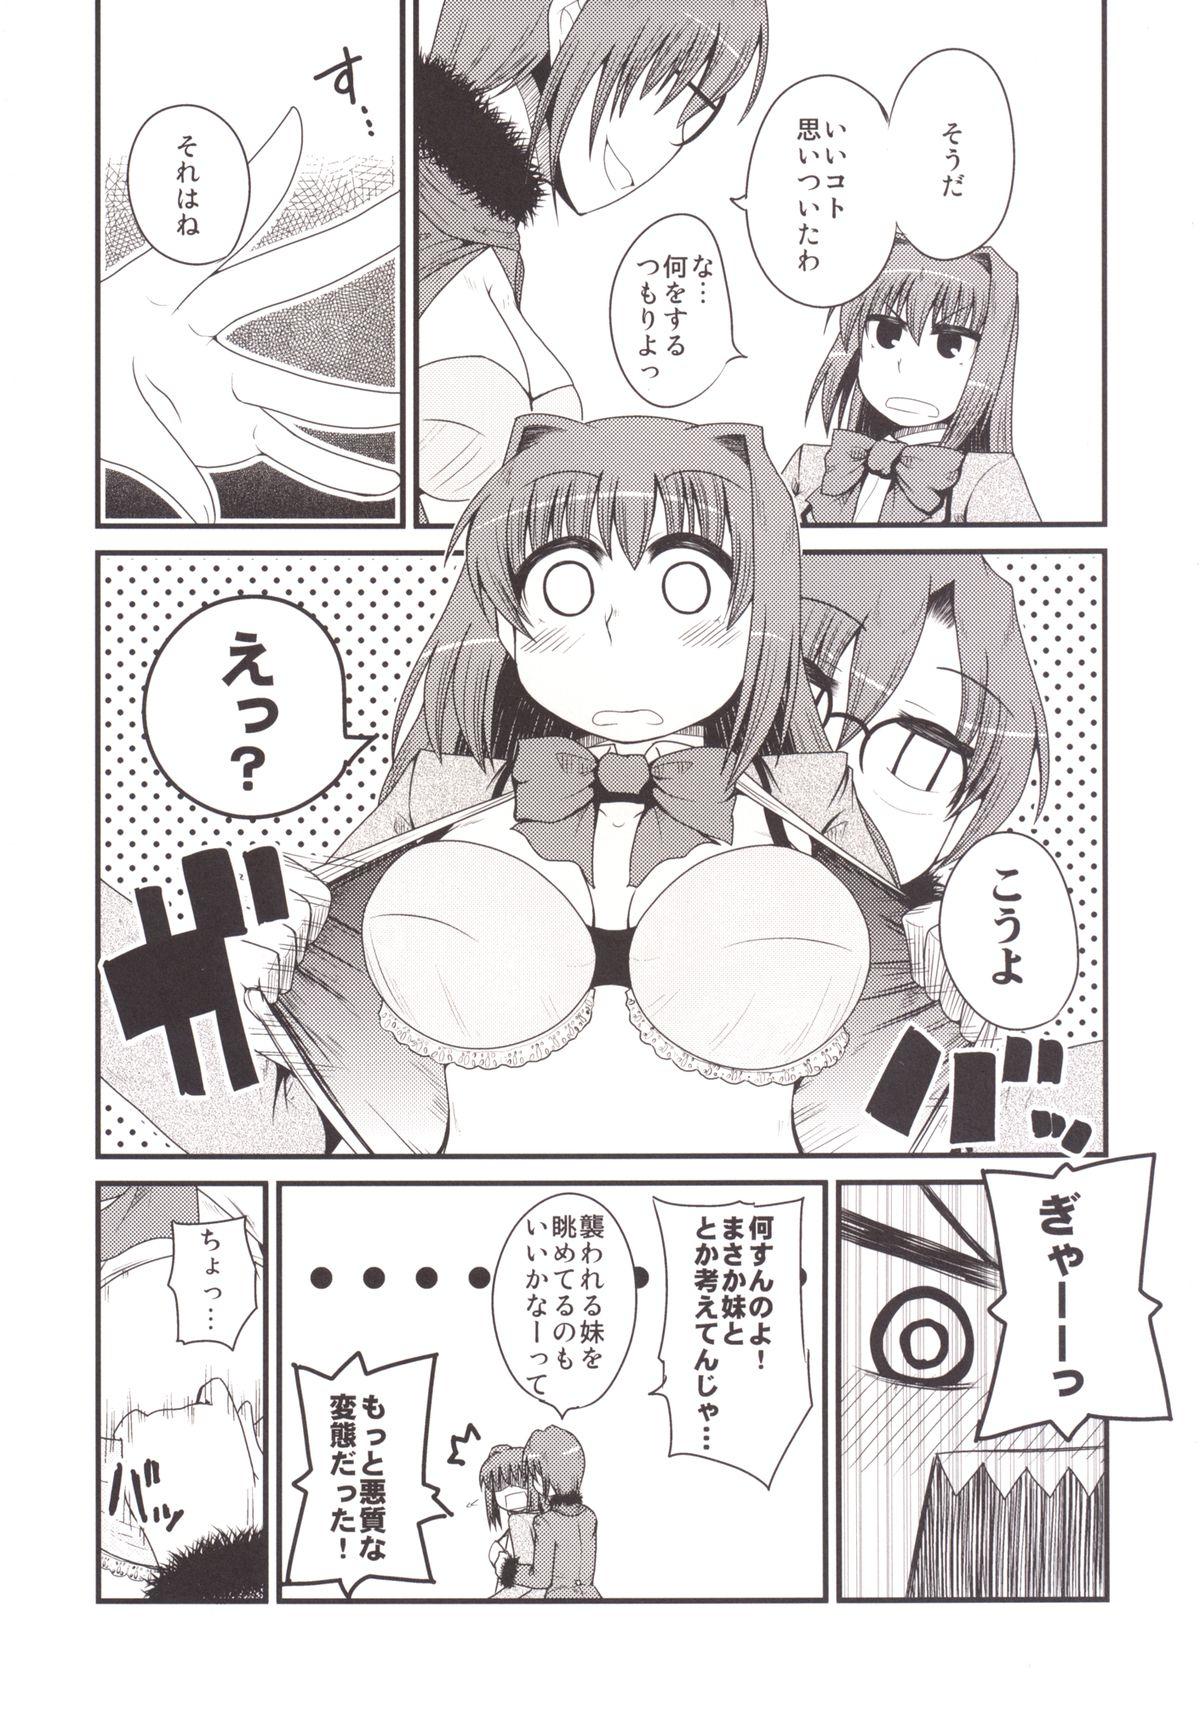 Porn Ittsu Main 2 - Mahou tsukai no yoru Tiny Tits - Page 9